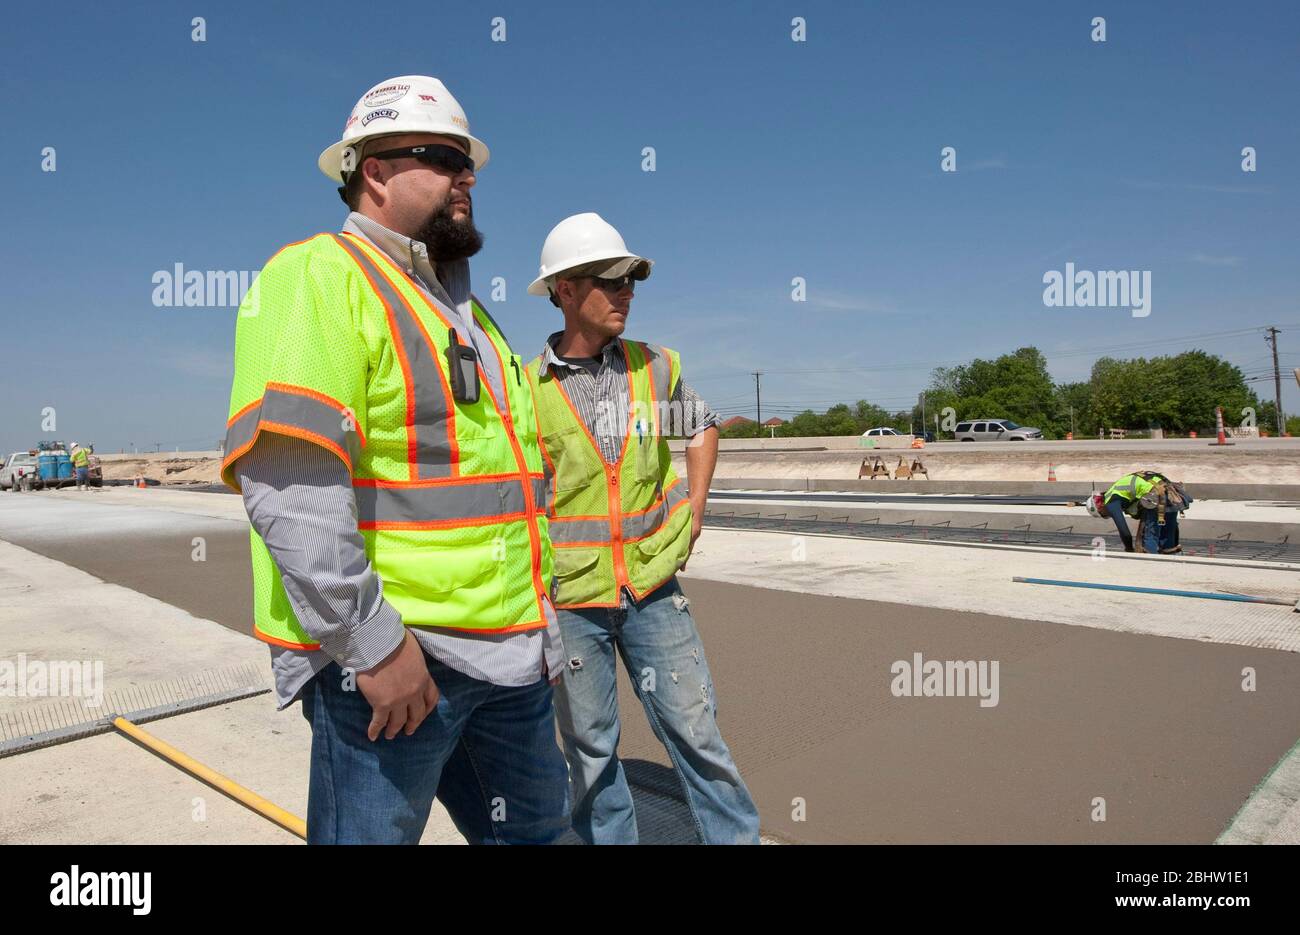 Austin Texas Etats-Unis, 6 avril 2011 : le superviseur de la construction surveille l'équipage travaillant sur une autoroute en béton. ©Marjorie Kamys Cotera/Daemmrich Photographie Banque D'Images